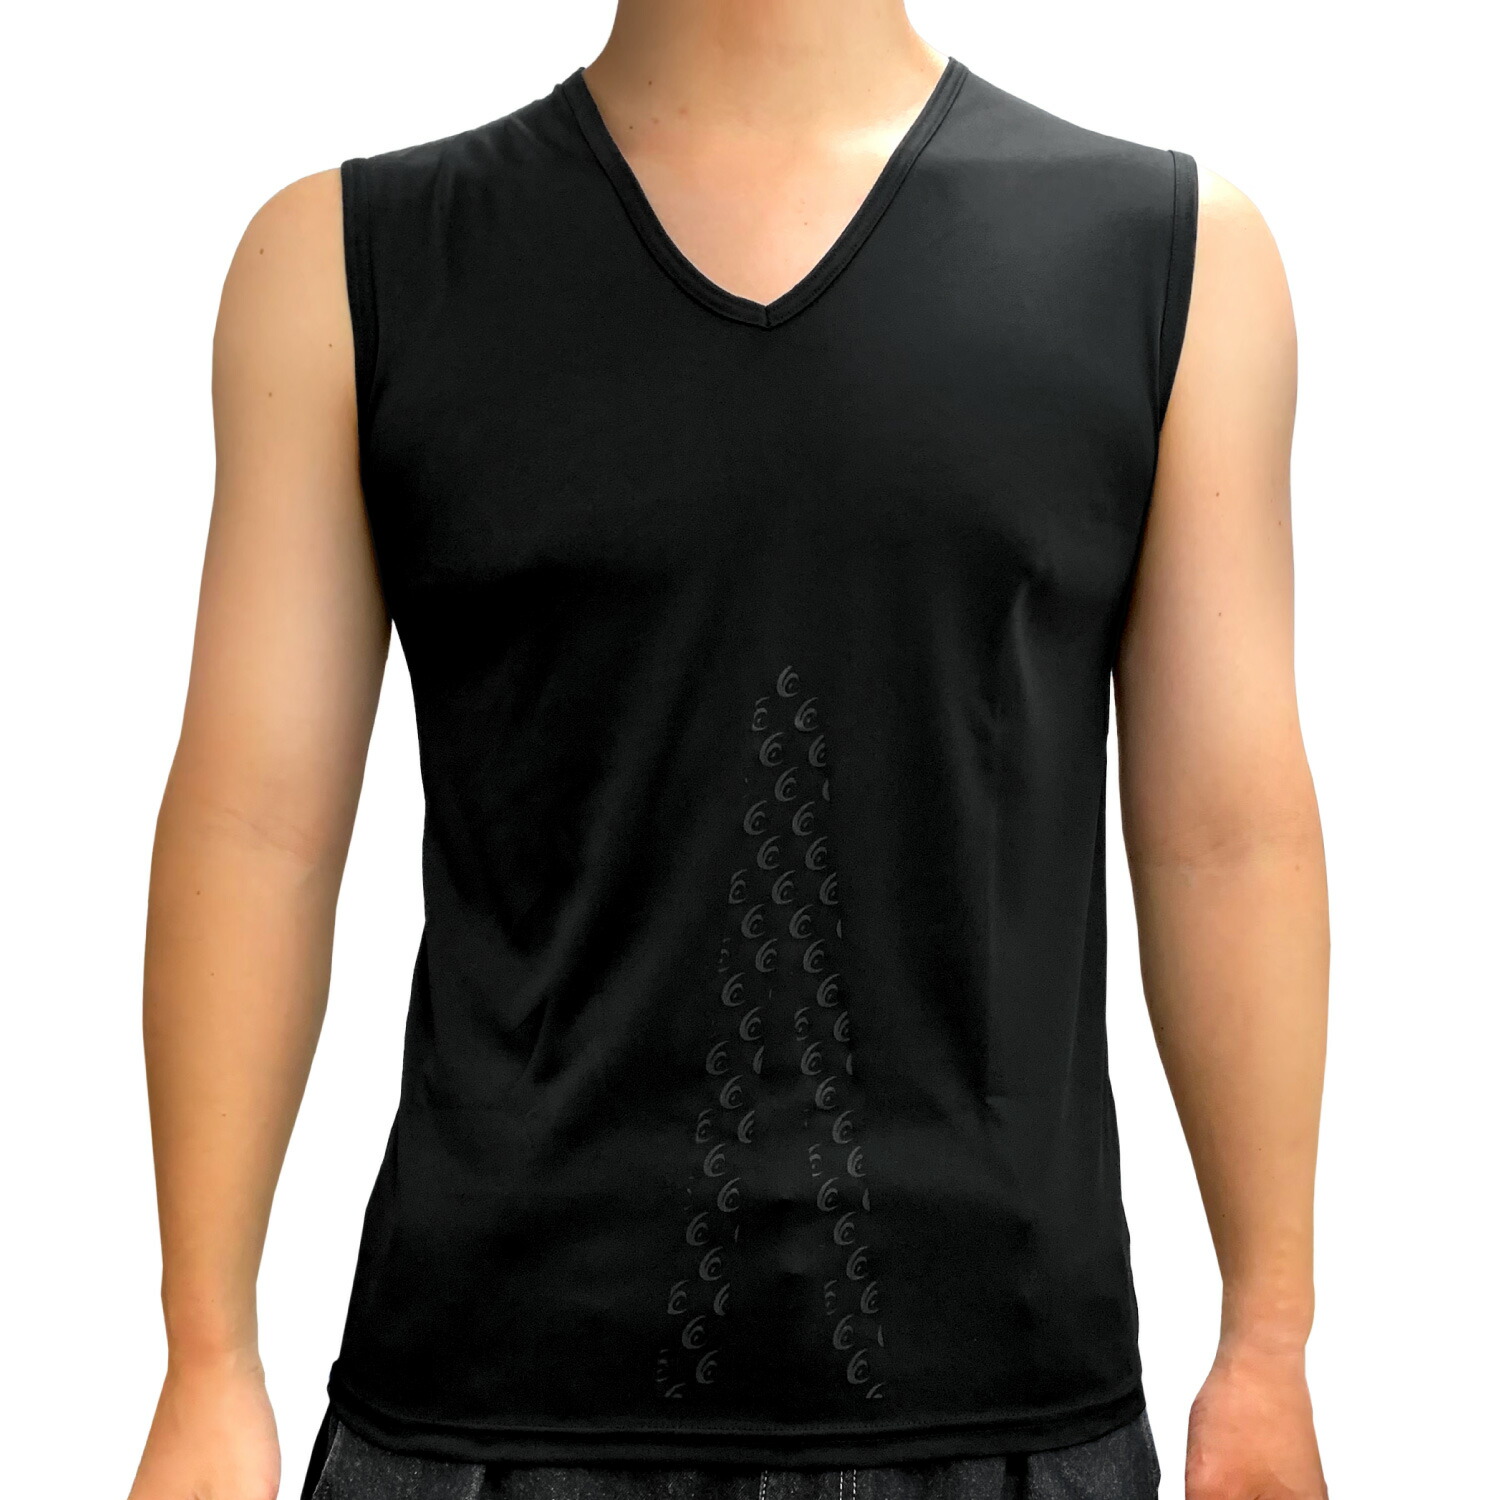 リライブシャツ インナー ノースリーブ メンズ 特許取得 インナーシャツ アンダーシャツ パワーシャツ 男性 機能性シャツ リカバリーウェア  リカバリーウエア